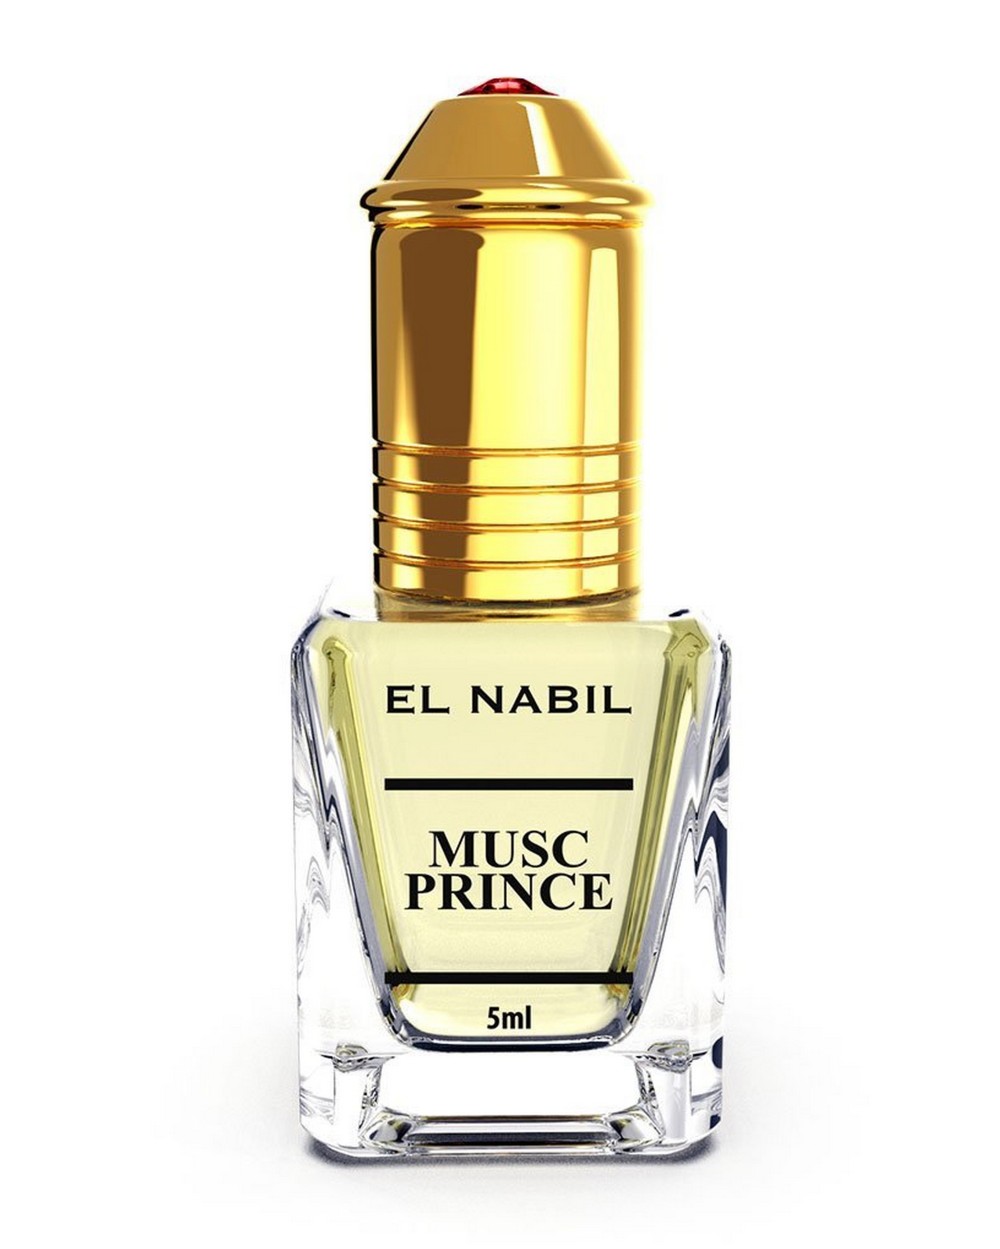 Prince El Nabil musk 5 ml